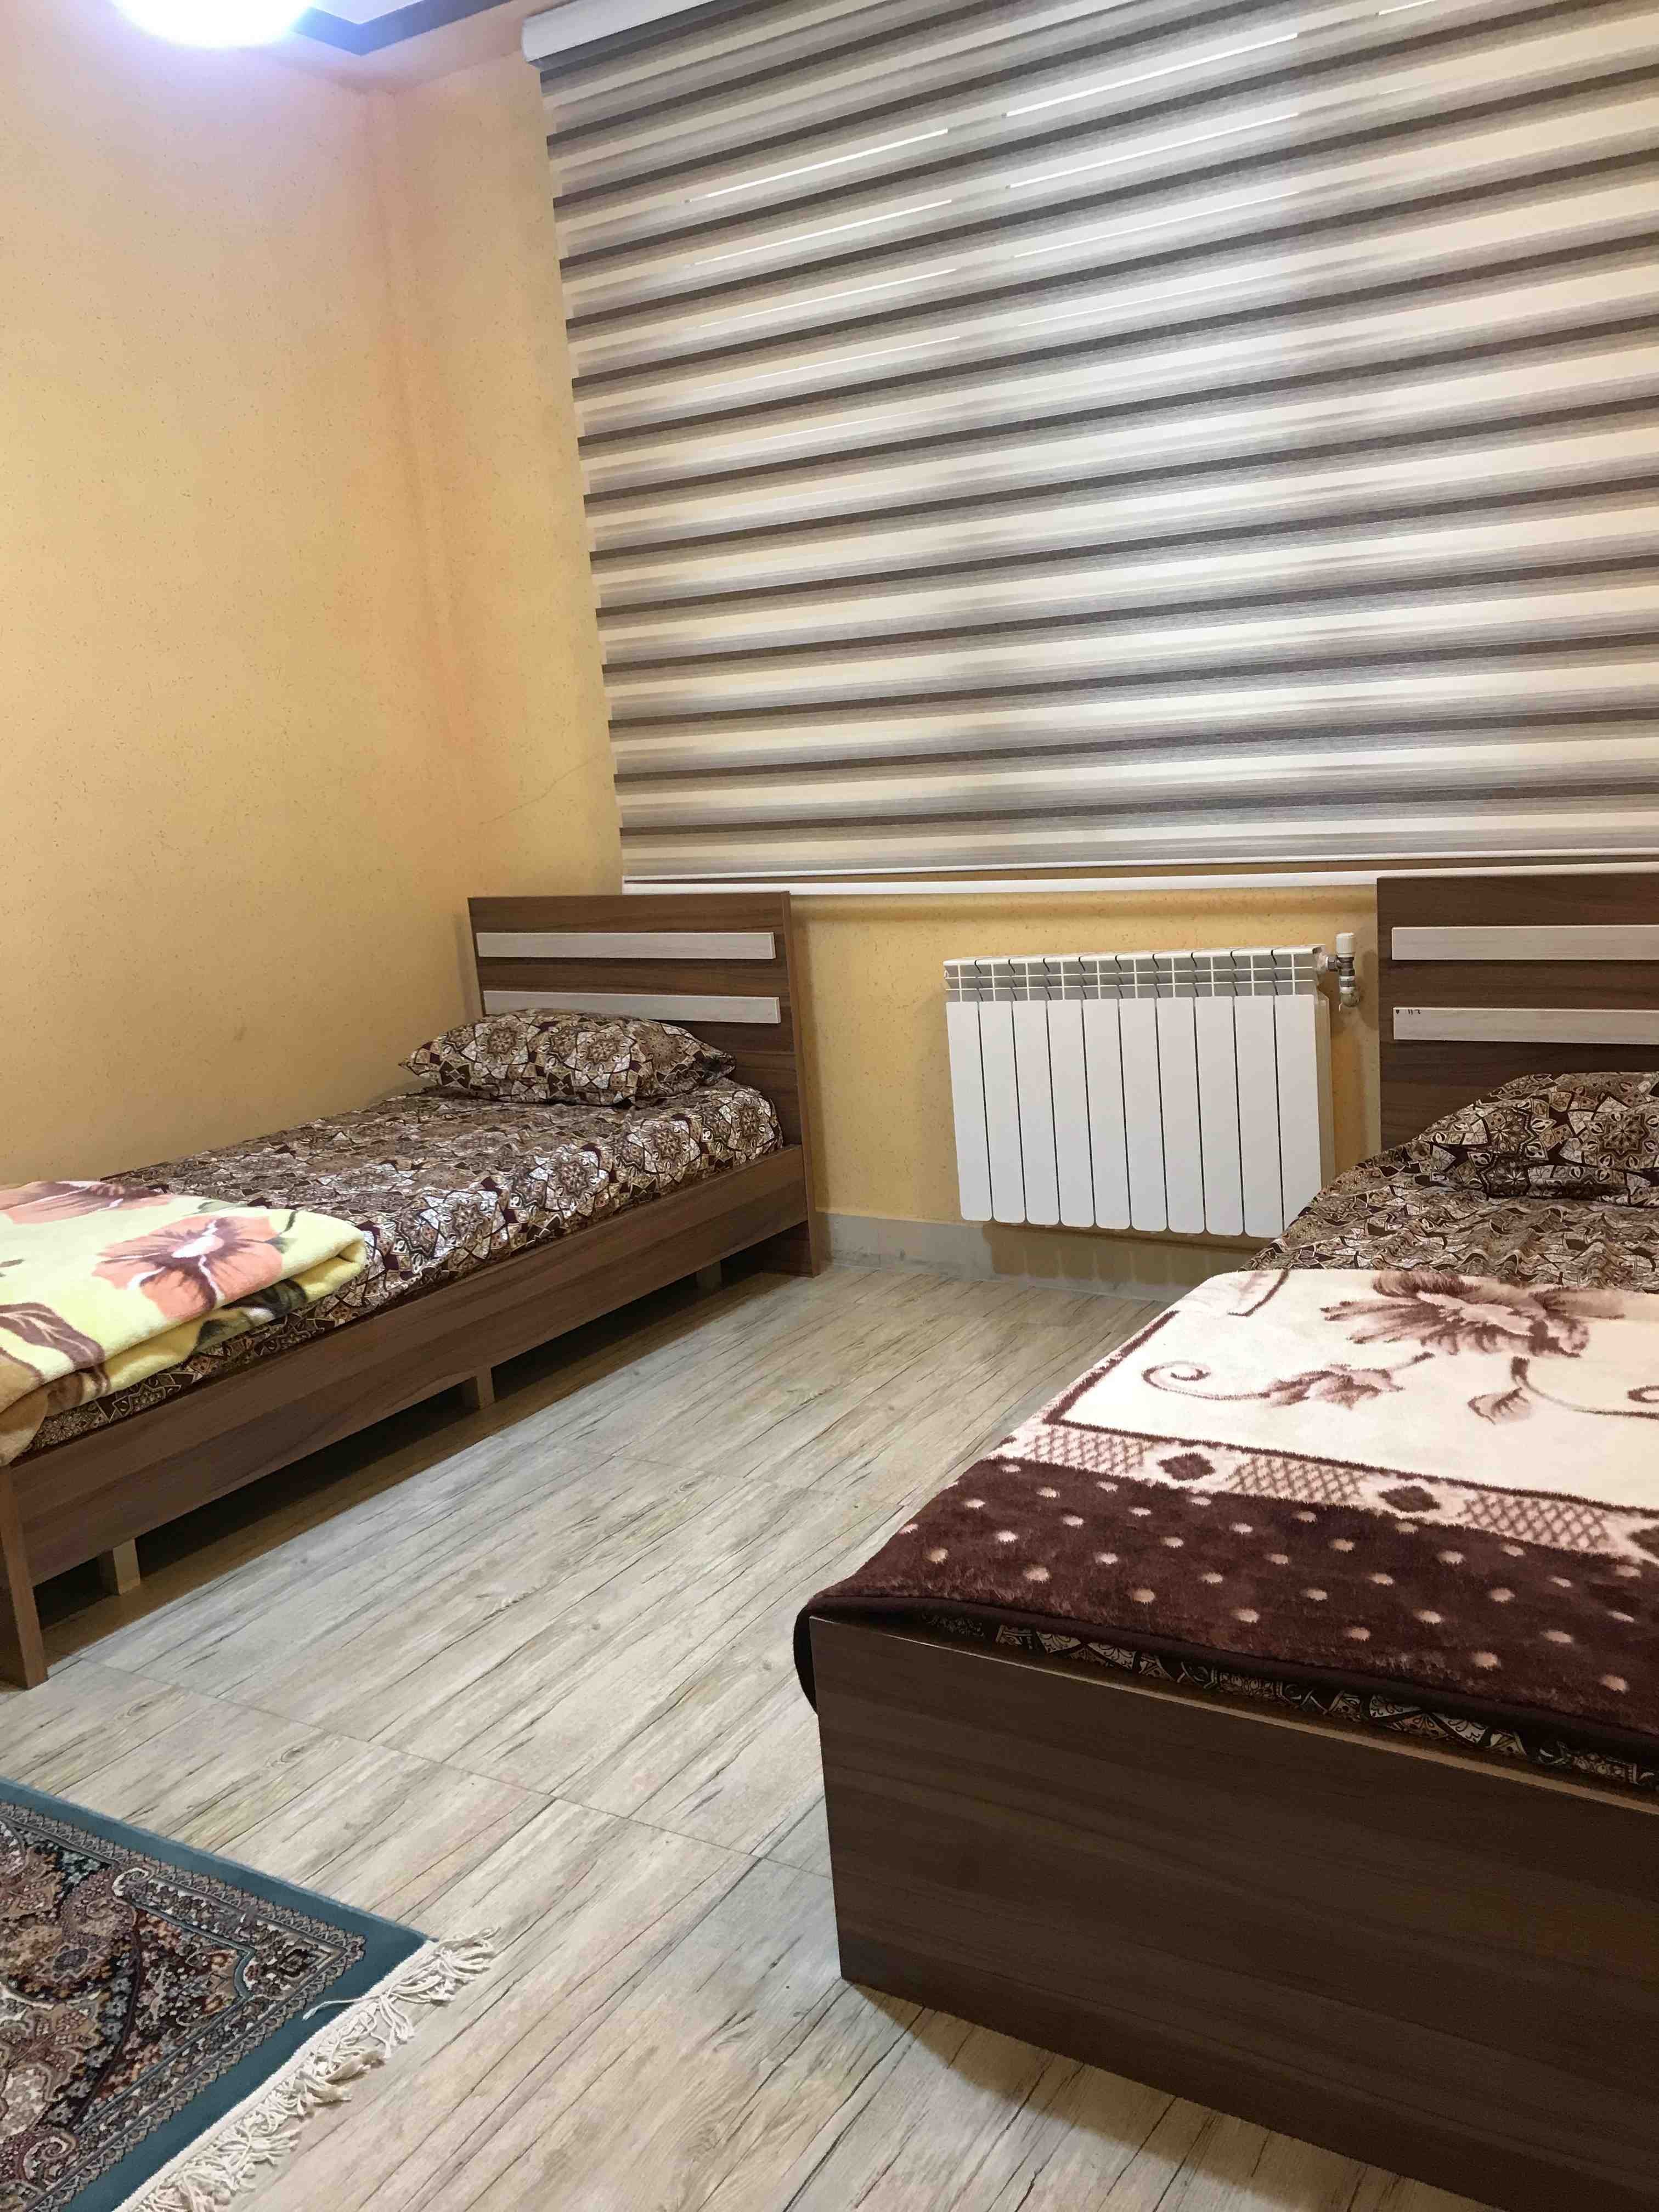 شهری اجاره آپارتمان دو خواب در دلگشا شیراز